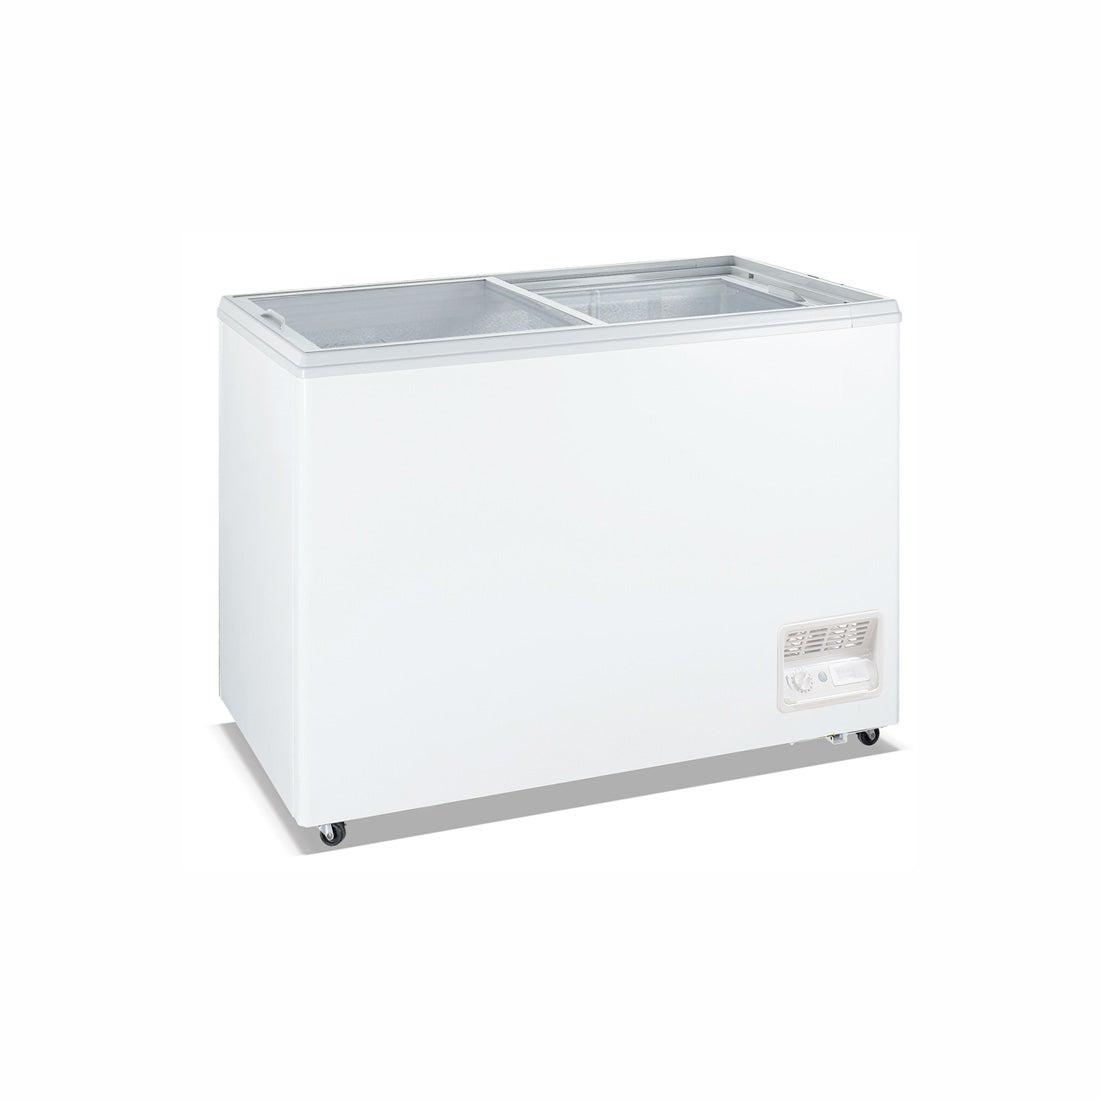 Heavy Duty Chest Freezer with Glass Sliding Lids - WD-200F